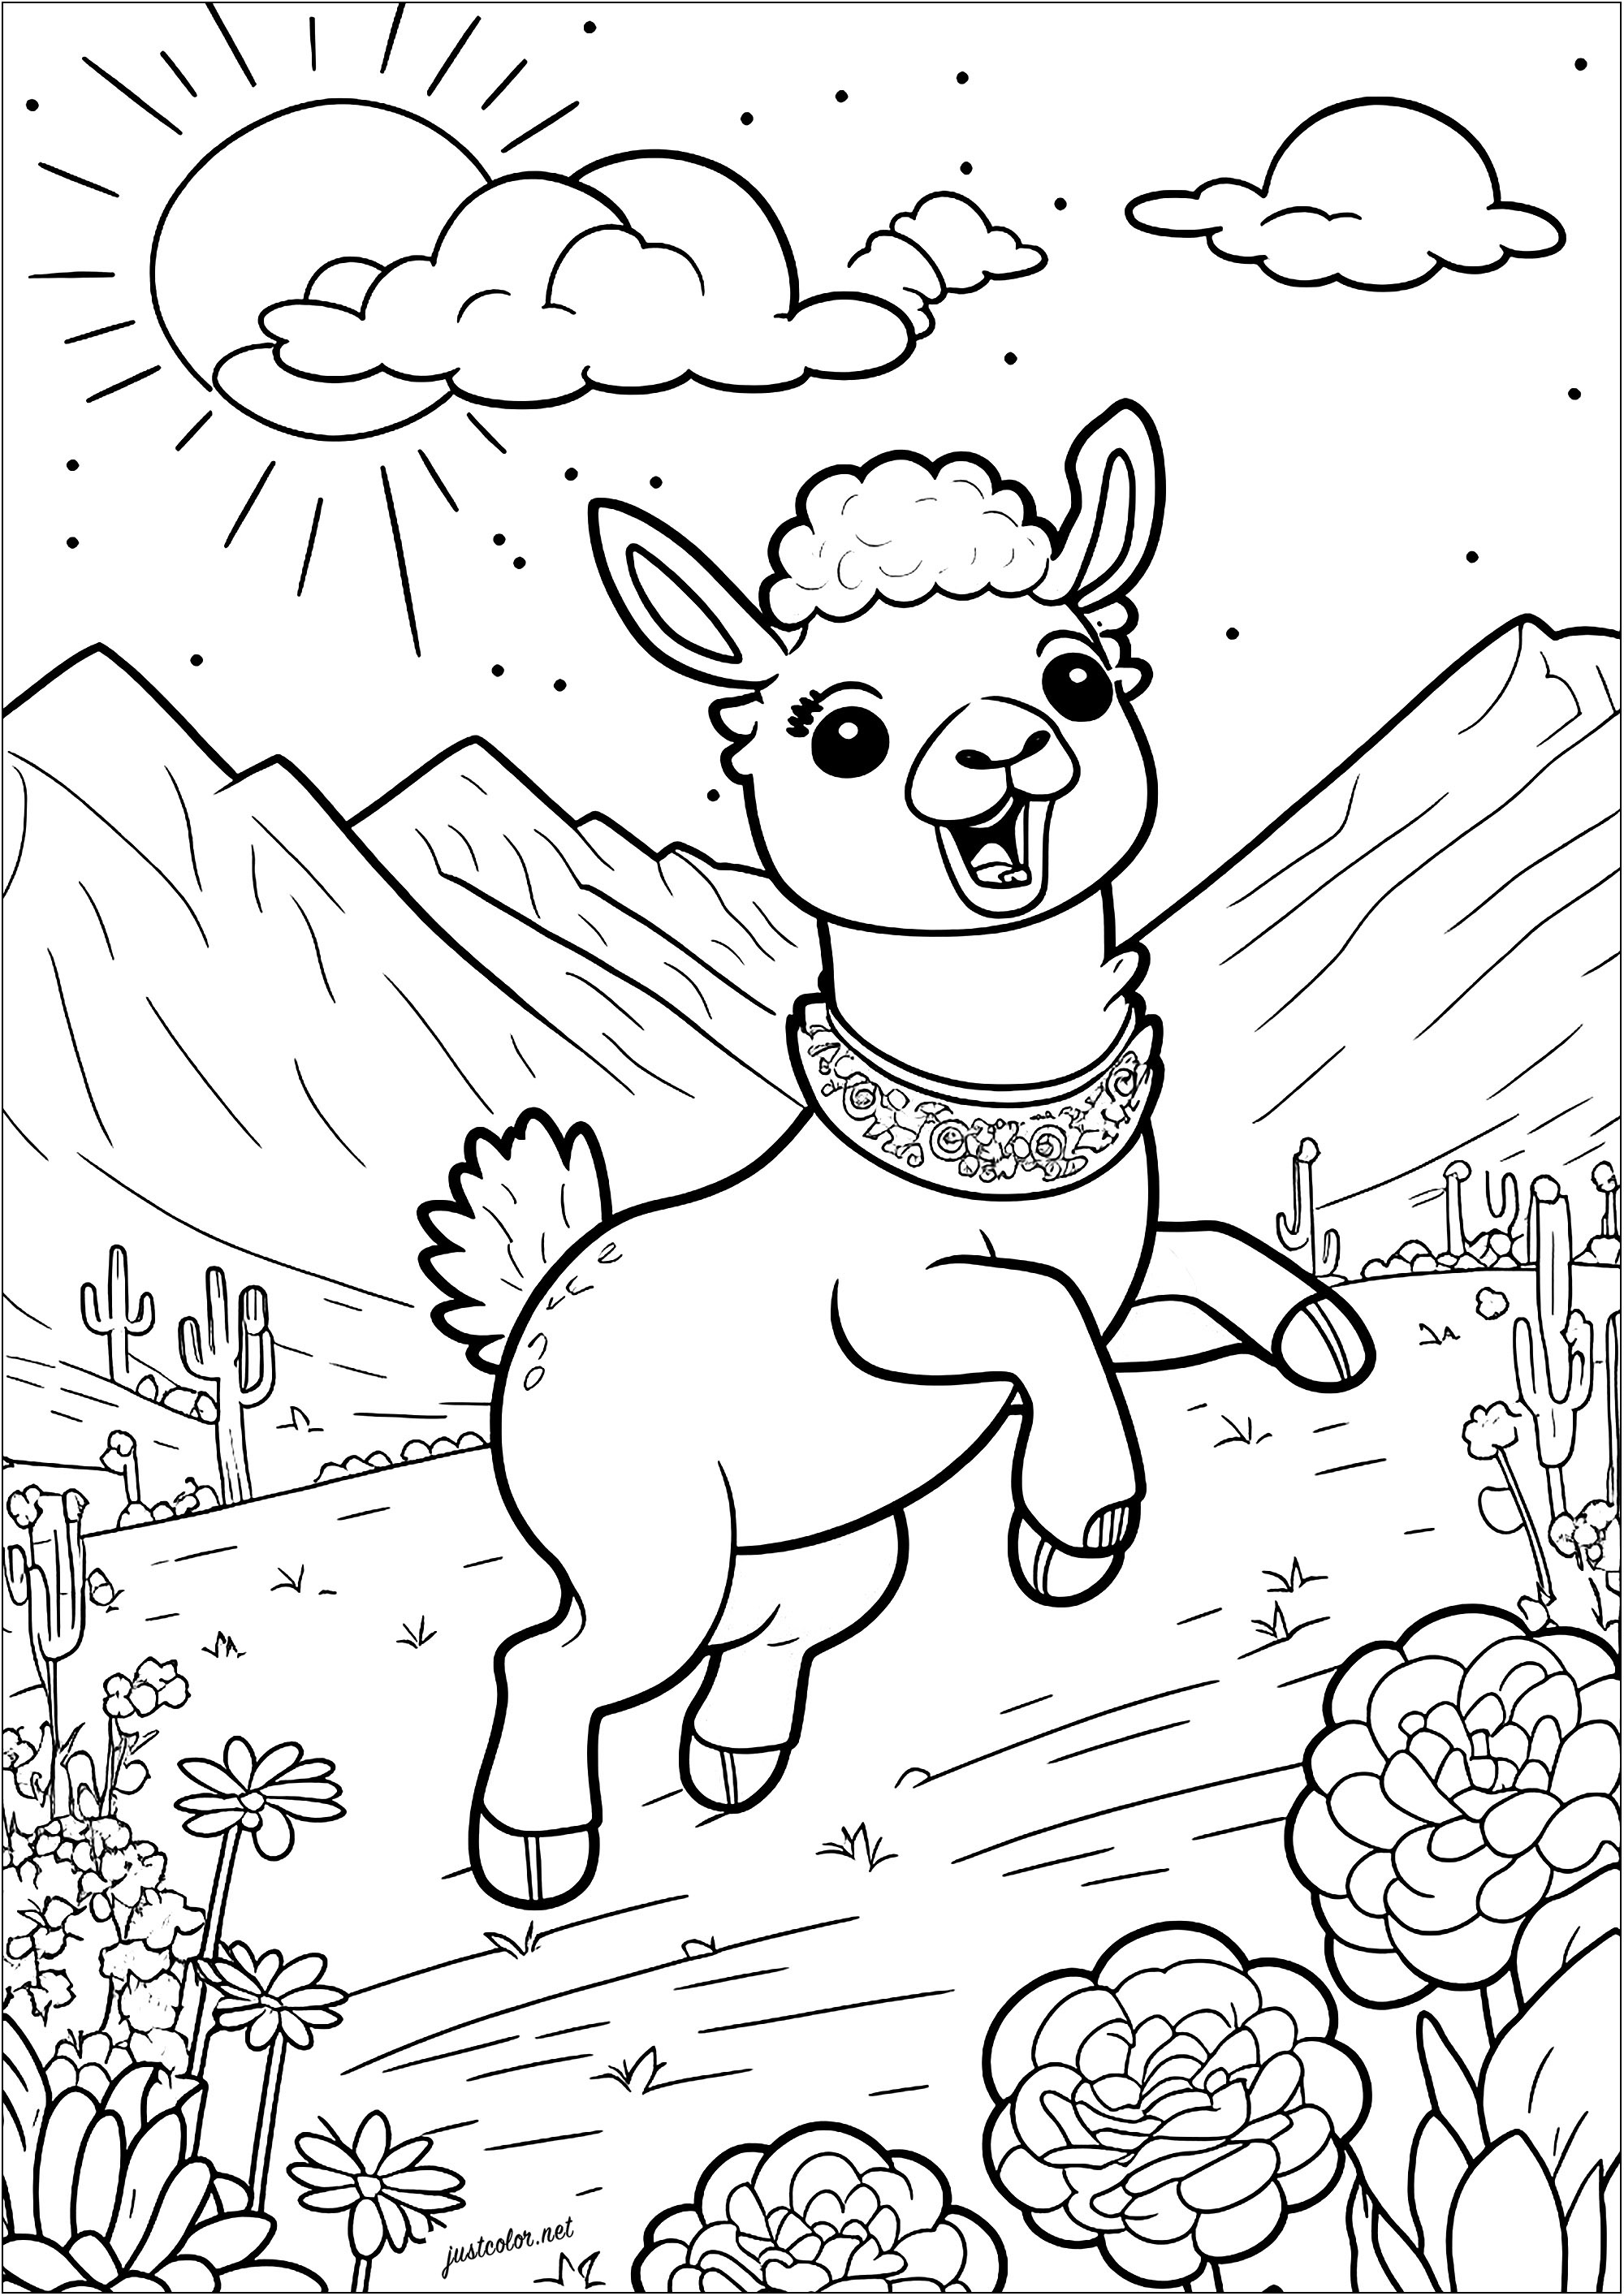 Kolorierung eines jungen Lamas, das in einer bergigen, blühenden Landschaft springt. Die langen Ohren dieses jungen Lamas sind himmelwärts gerichtet, und seine großen Augen funkeln vor Aufregung. Vergessen Sie nicht, die Kakteen am Fuß der Berge und die hübschen Blumen im Vordergrund auszumalen.